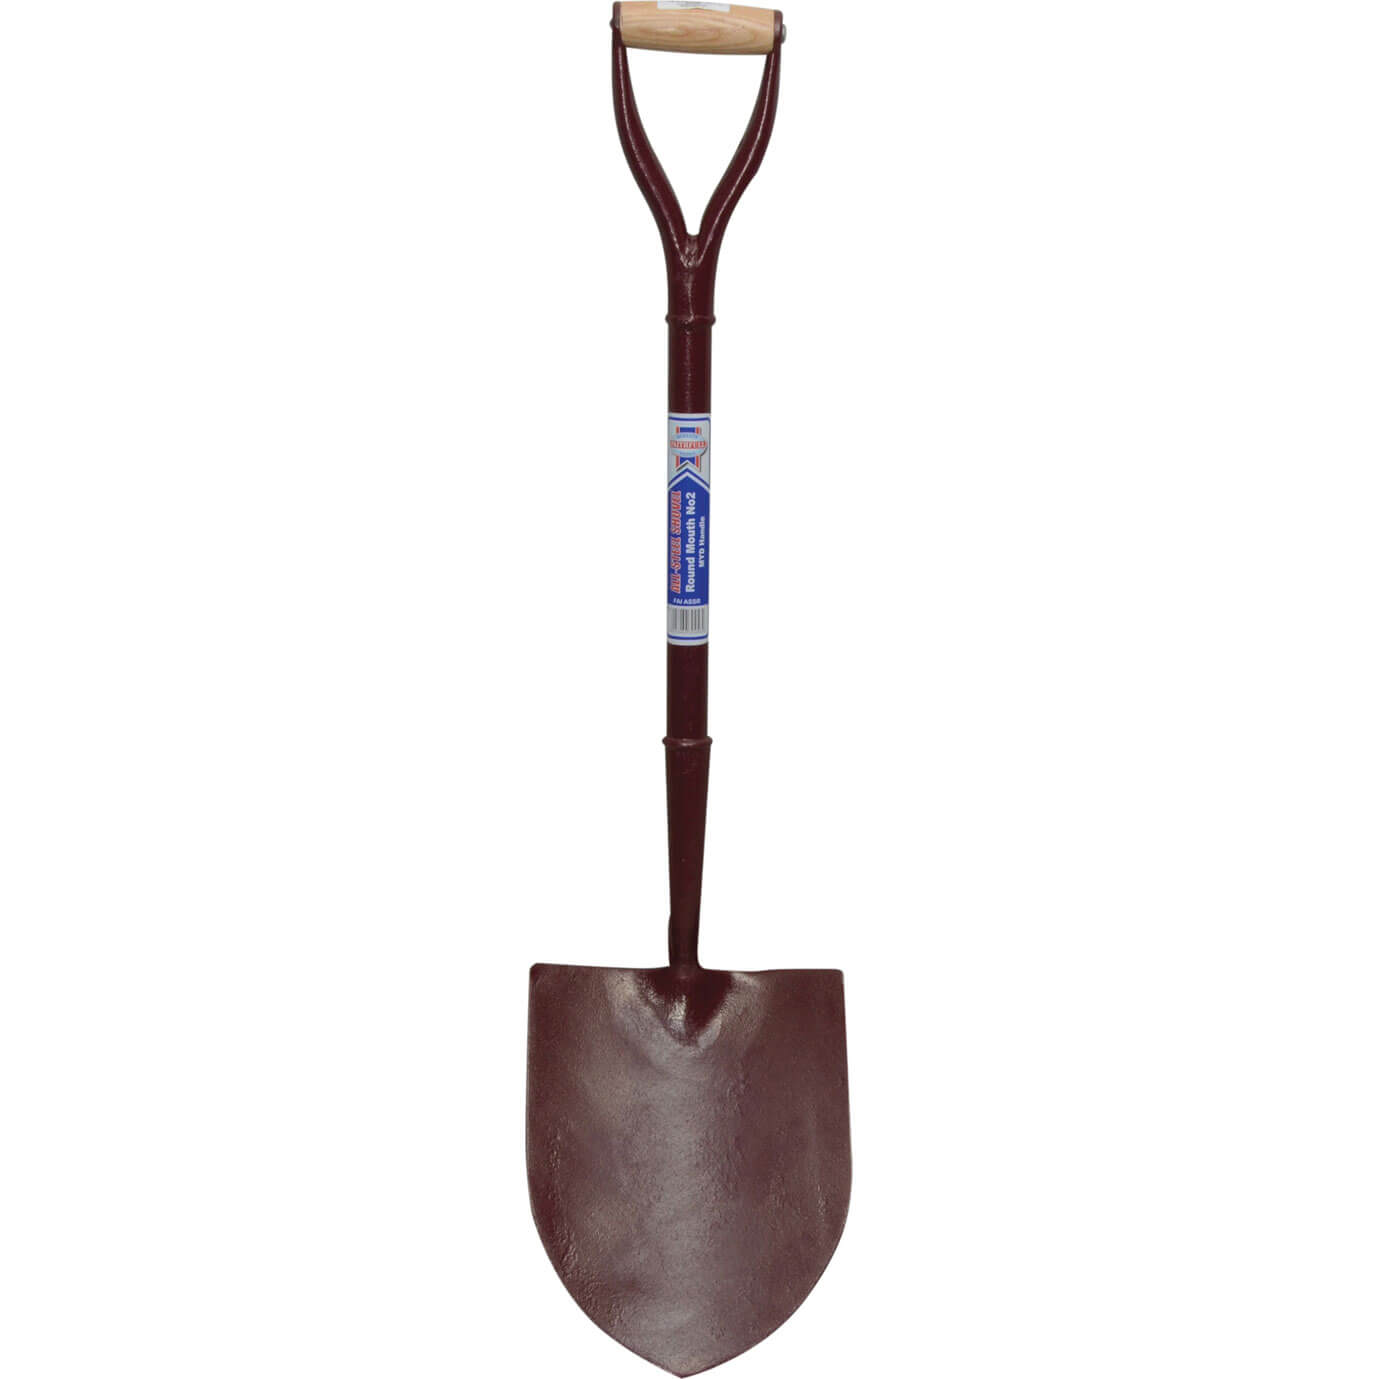 Image of Faithfull Steel Round Mouth Shovel